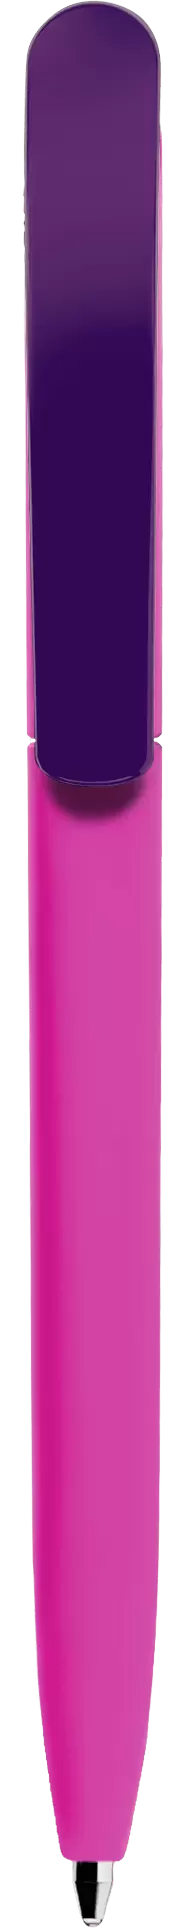 Ручка VIVALDI SOFT MIX Фиолетовая (сиреневая) с фиоле 1333-24-11